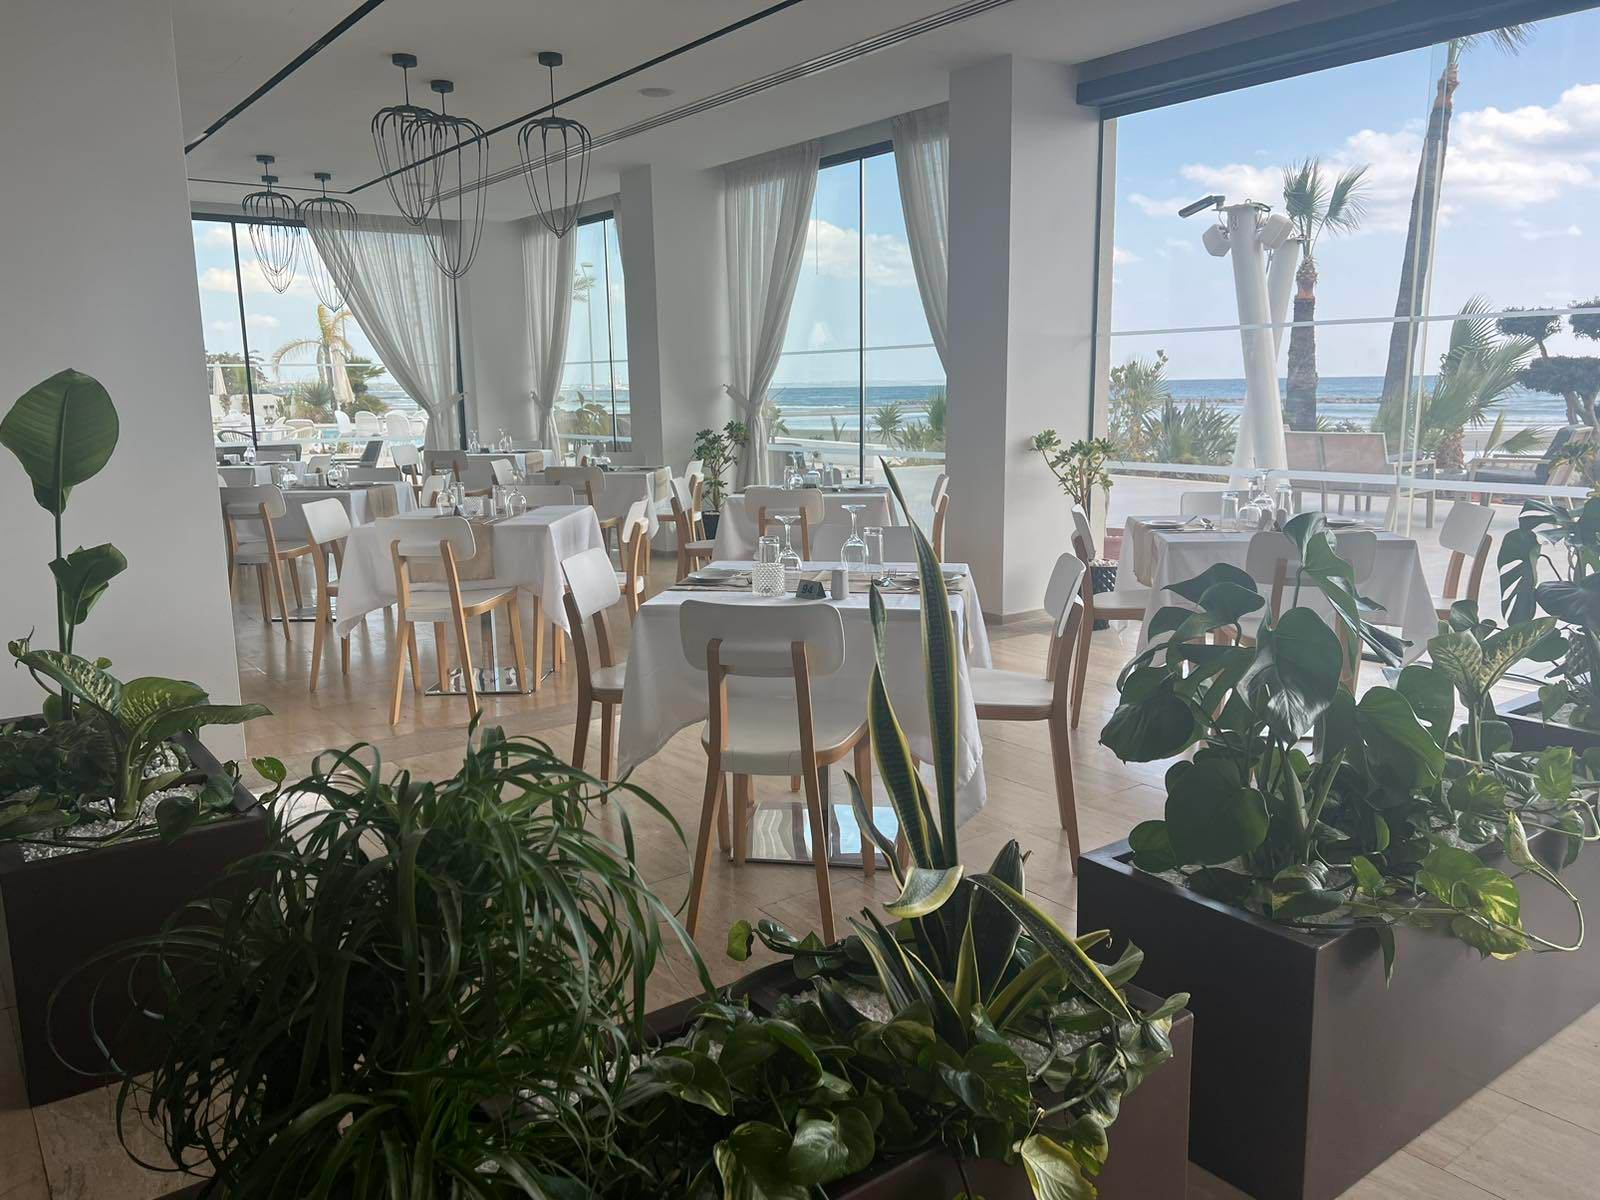 Ξενοδοχείο της Λάρνακας επέστρεψε και προσφέρει πλούσιο πρωινό με θέα τη θάλασσα με μόλις €12